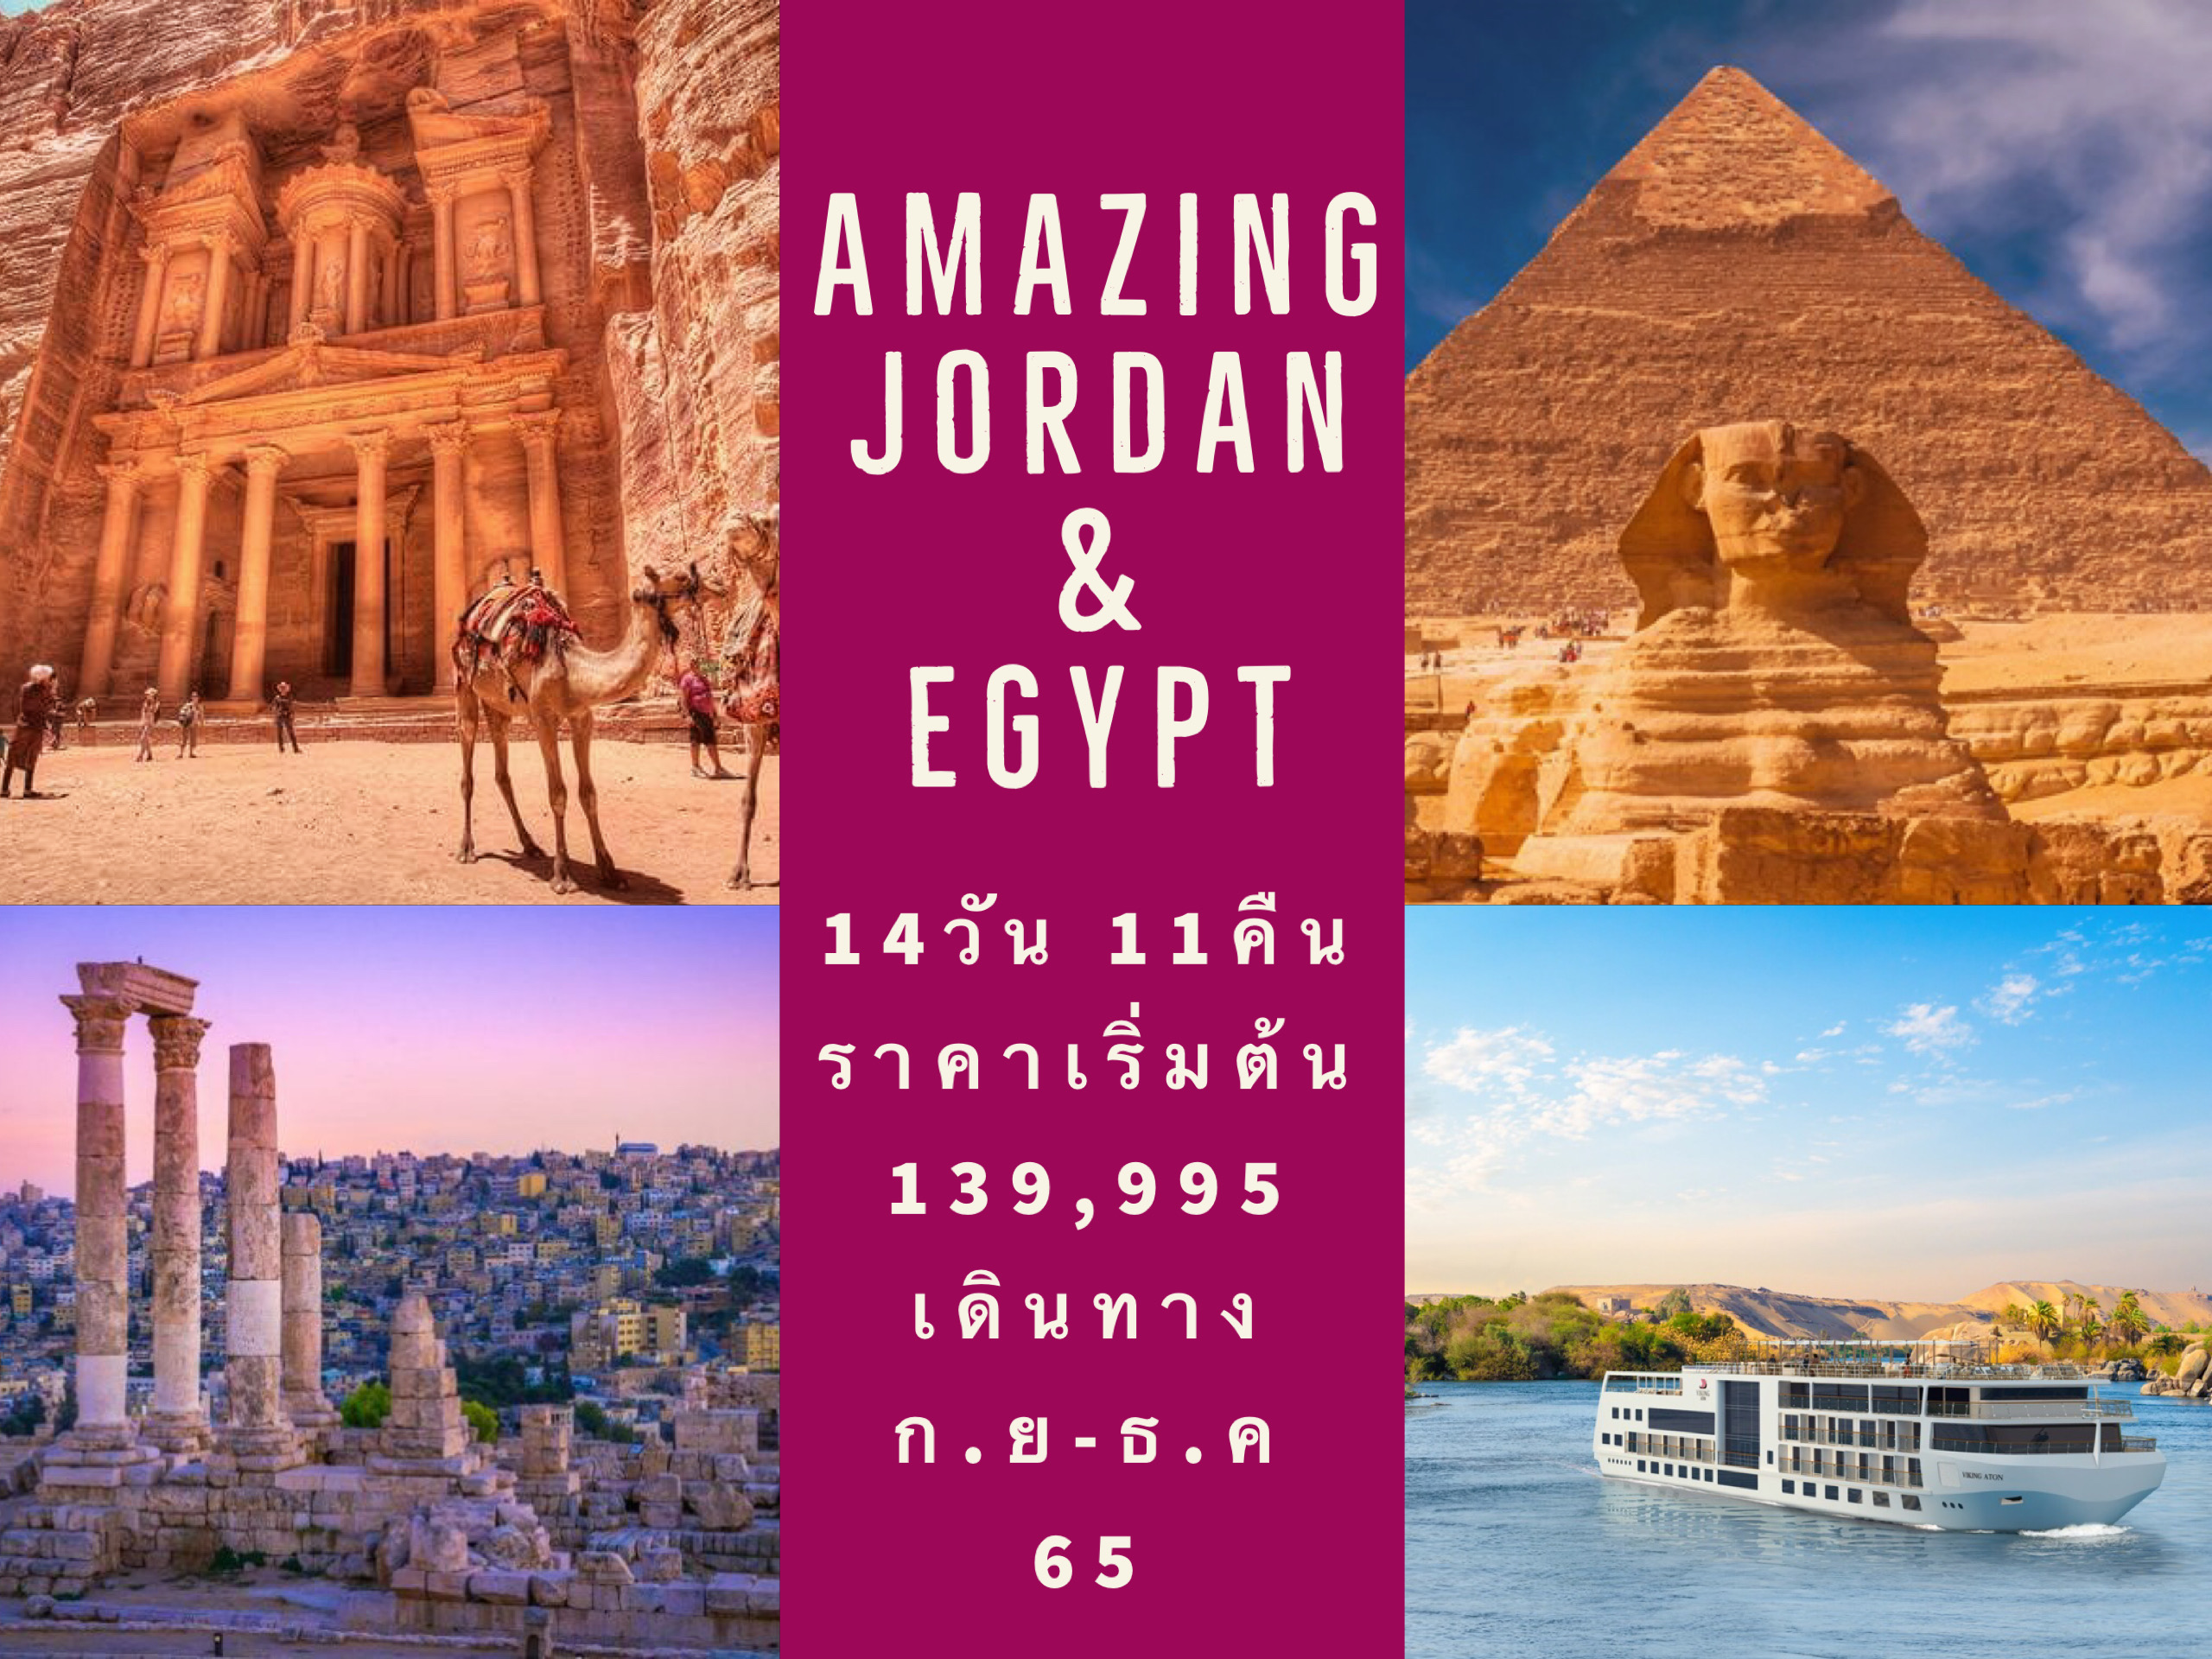 AMAZING JORDAN EGYPT 14D11N